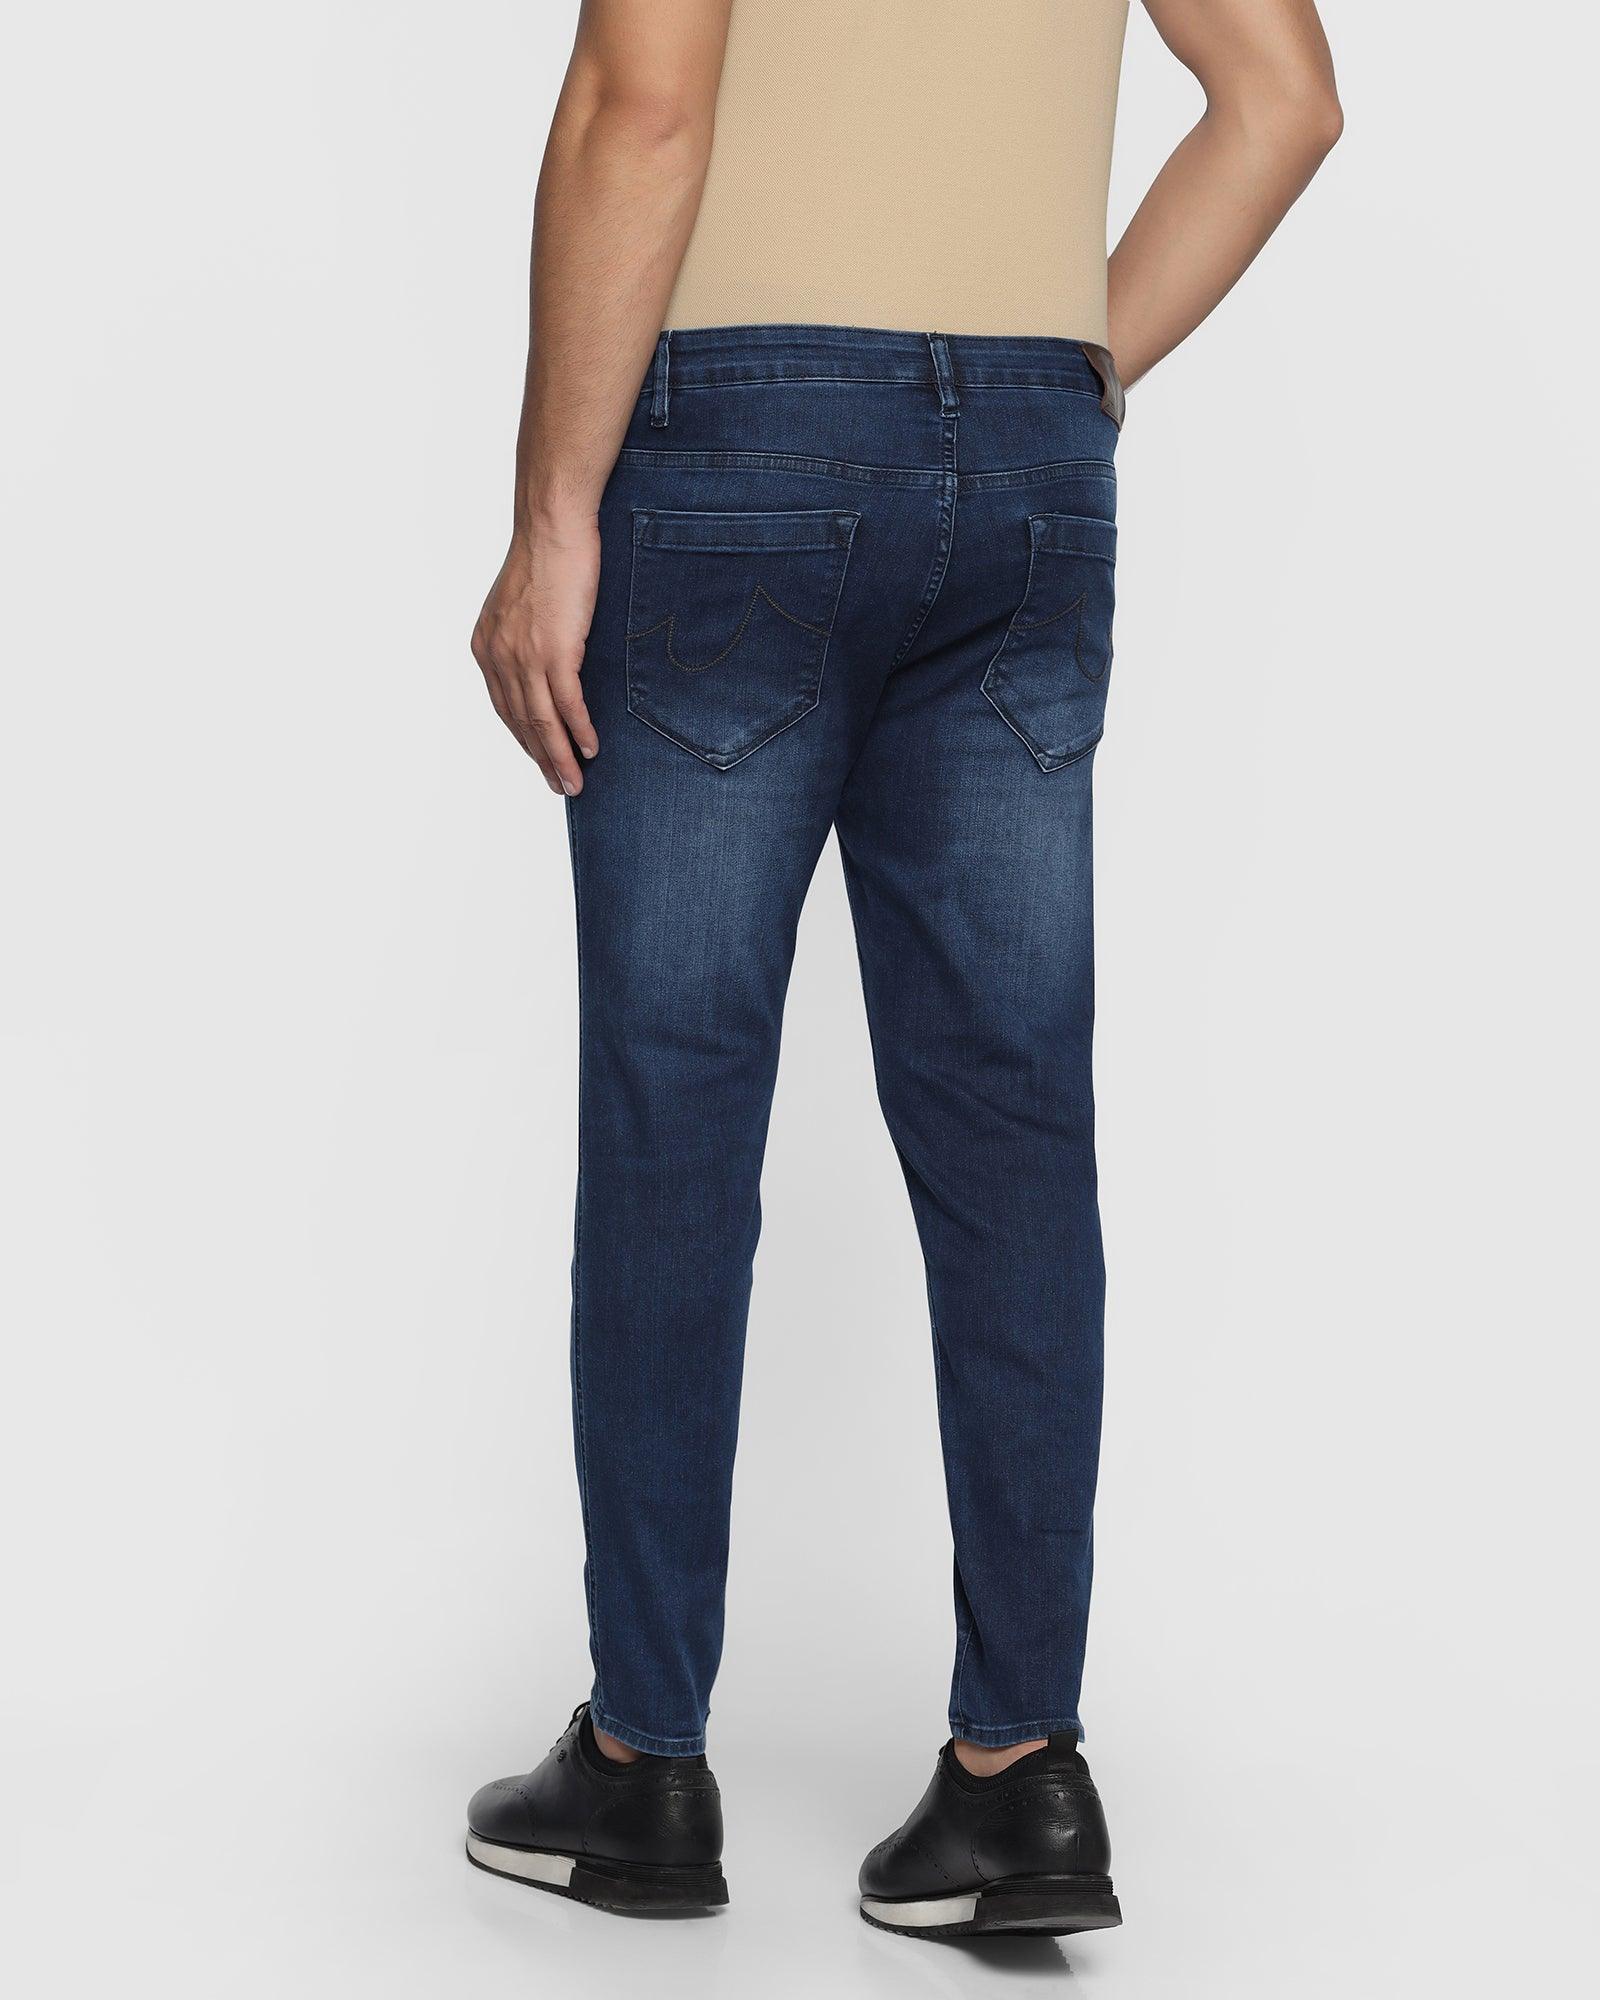 Super Flex Skinny Cropped Fiji Fit Indigo Jeans - Fanzo